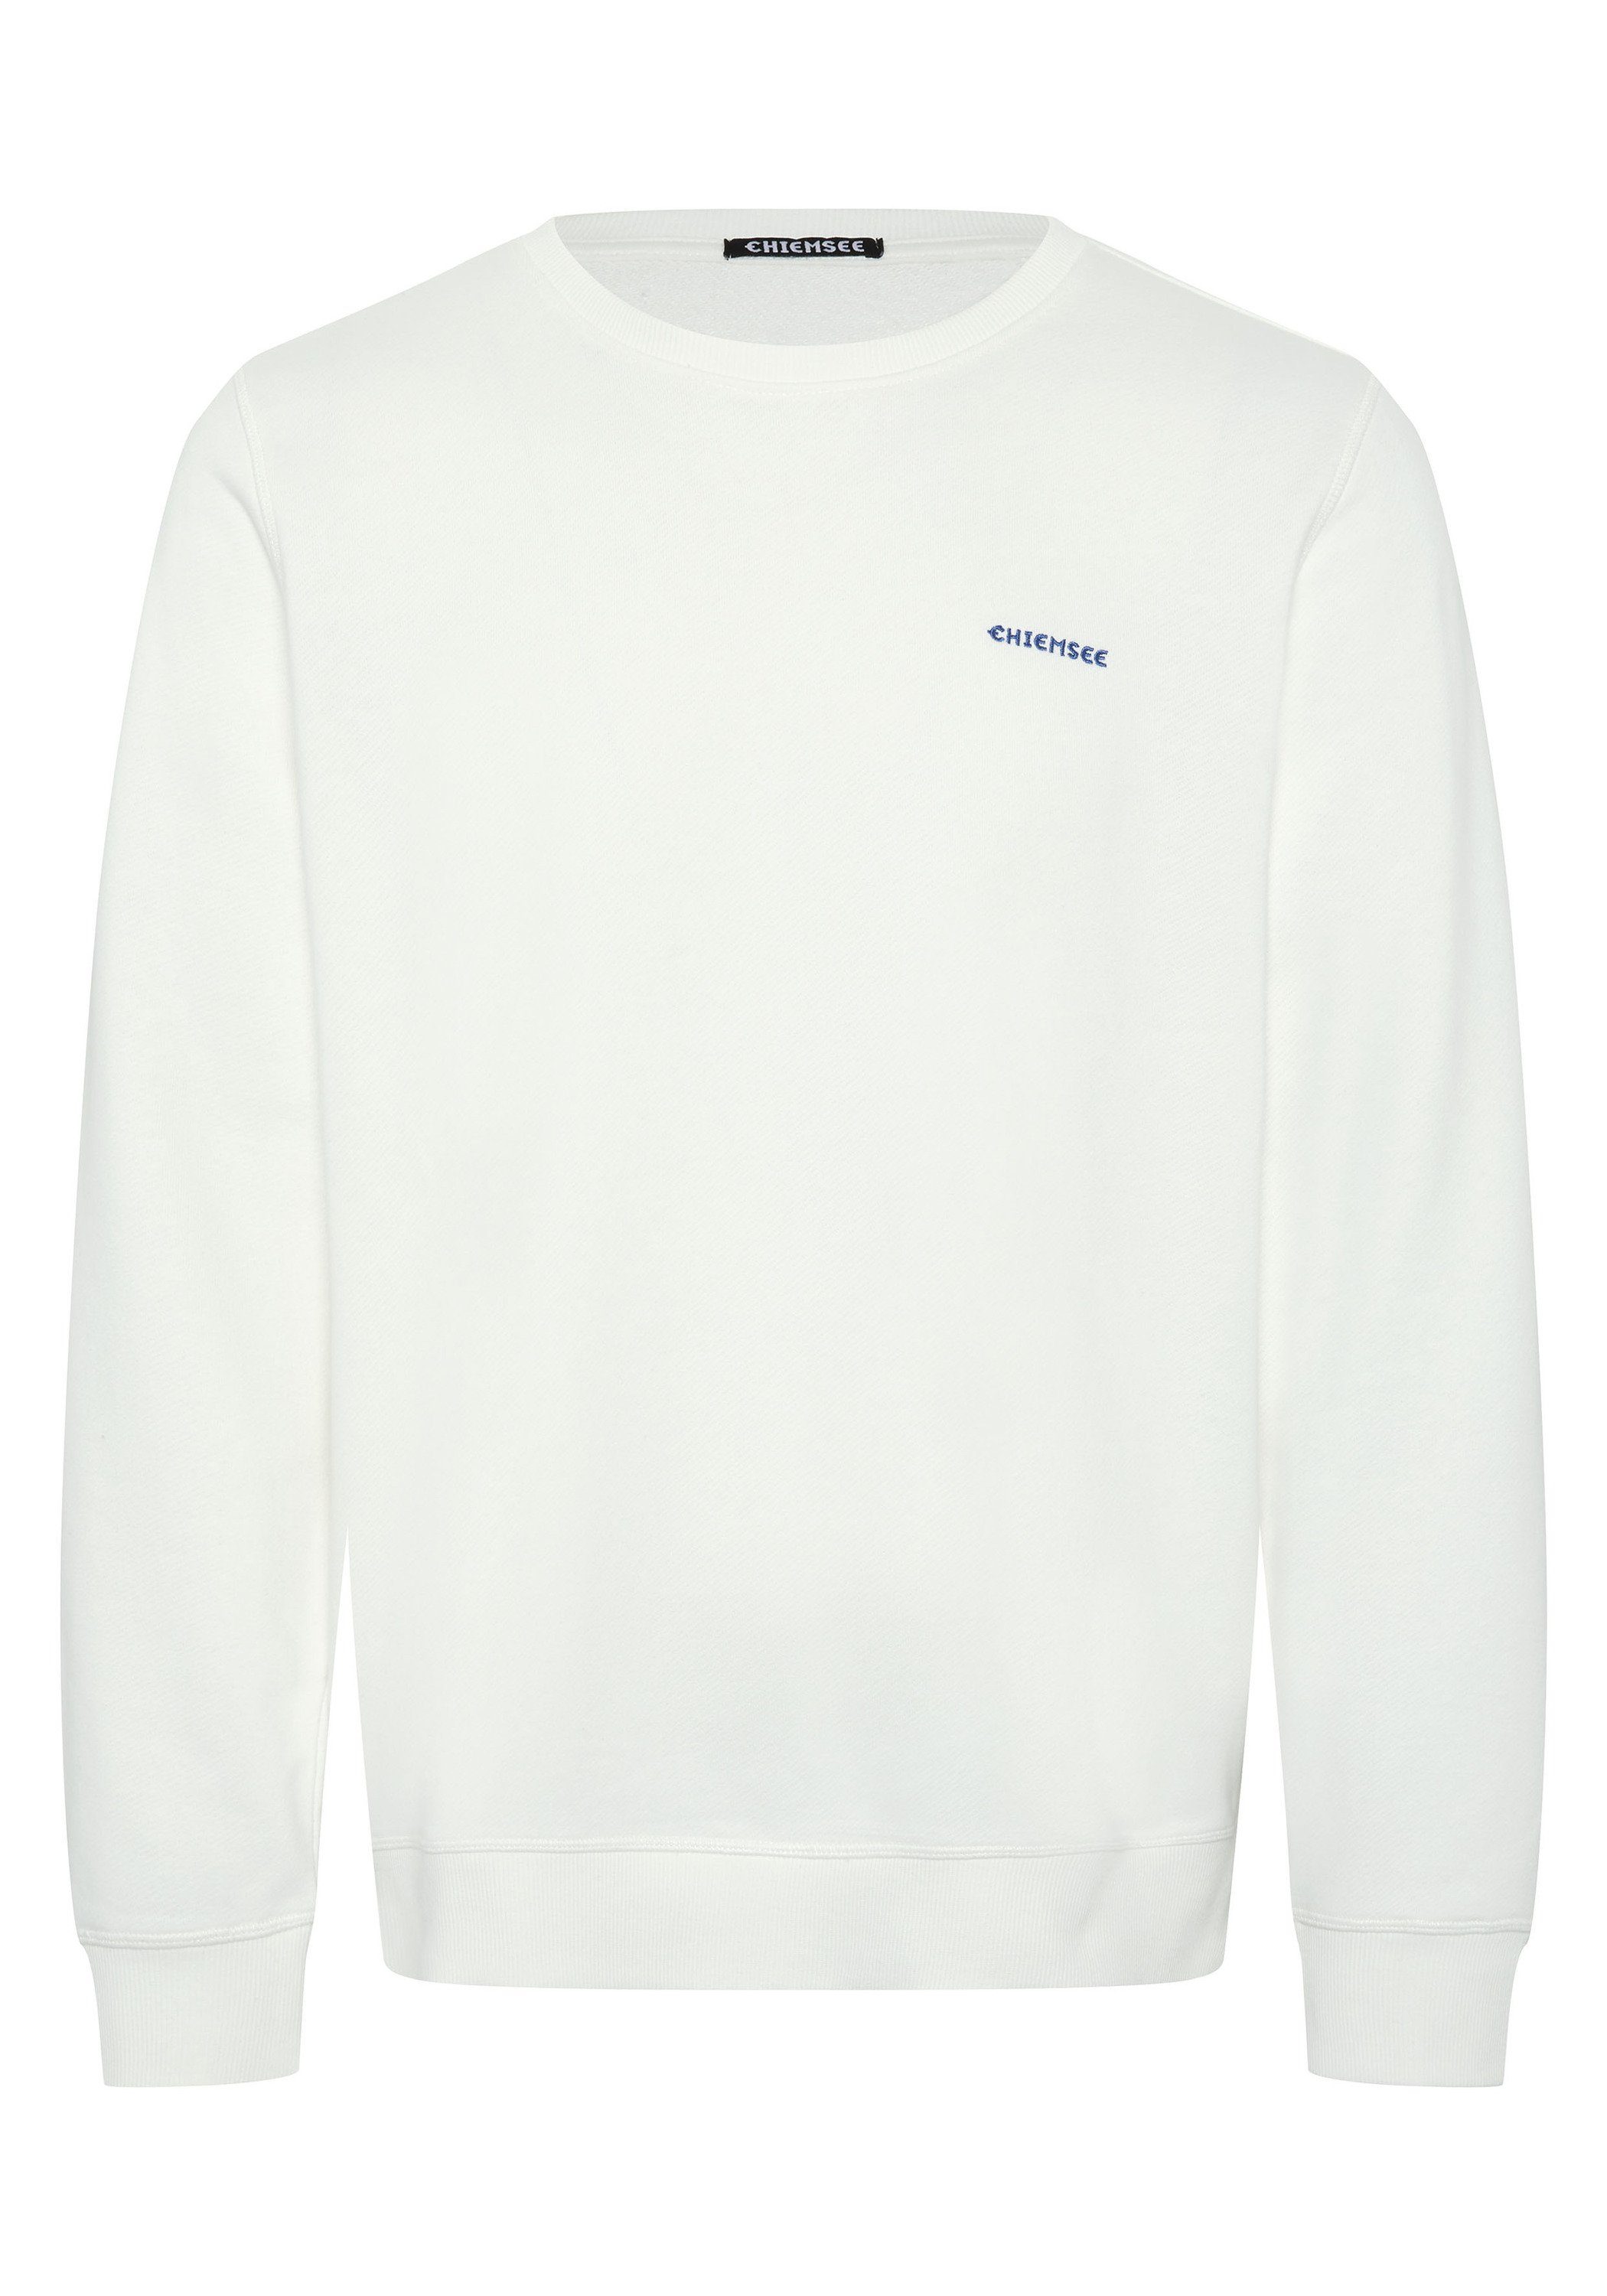 Chiemsee Sweatshirt Sweater mit Jumper-Motiv 1 11-4202 Star White